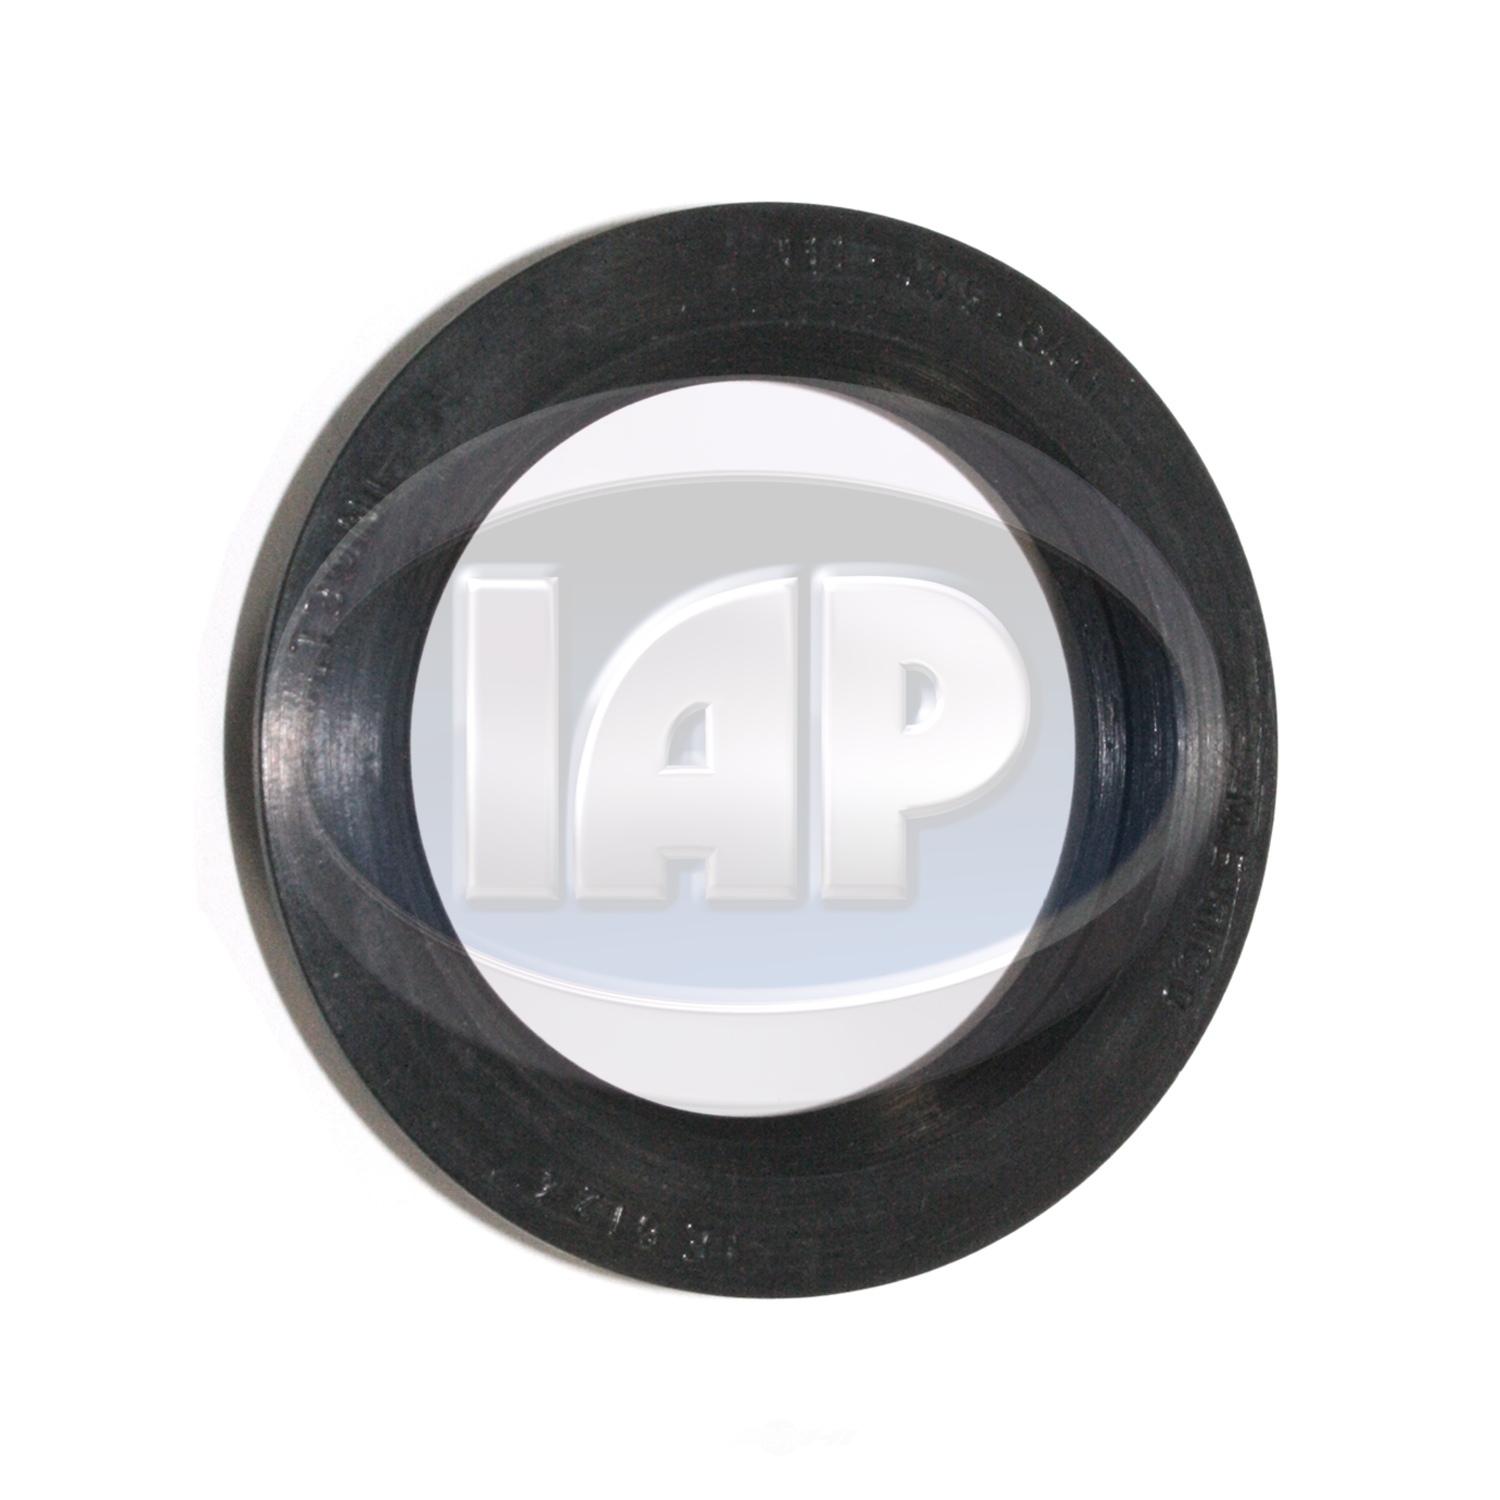 IAP/KUHLTEK MOTORWERKS - Wheel Seal - KMS 111405641B